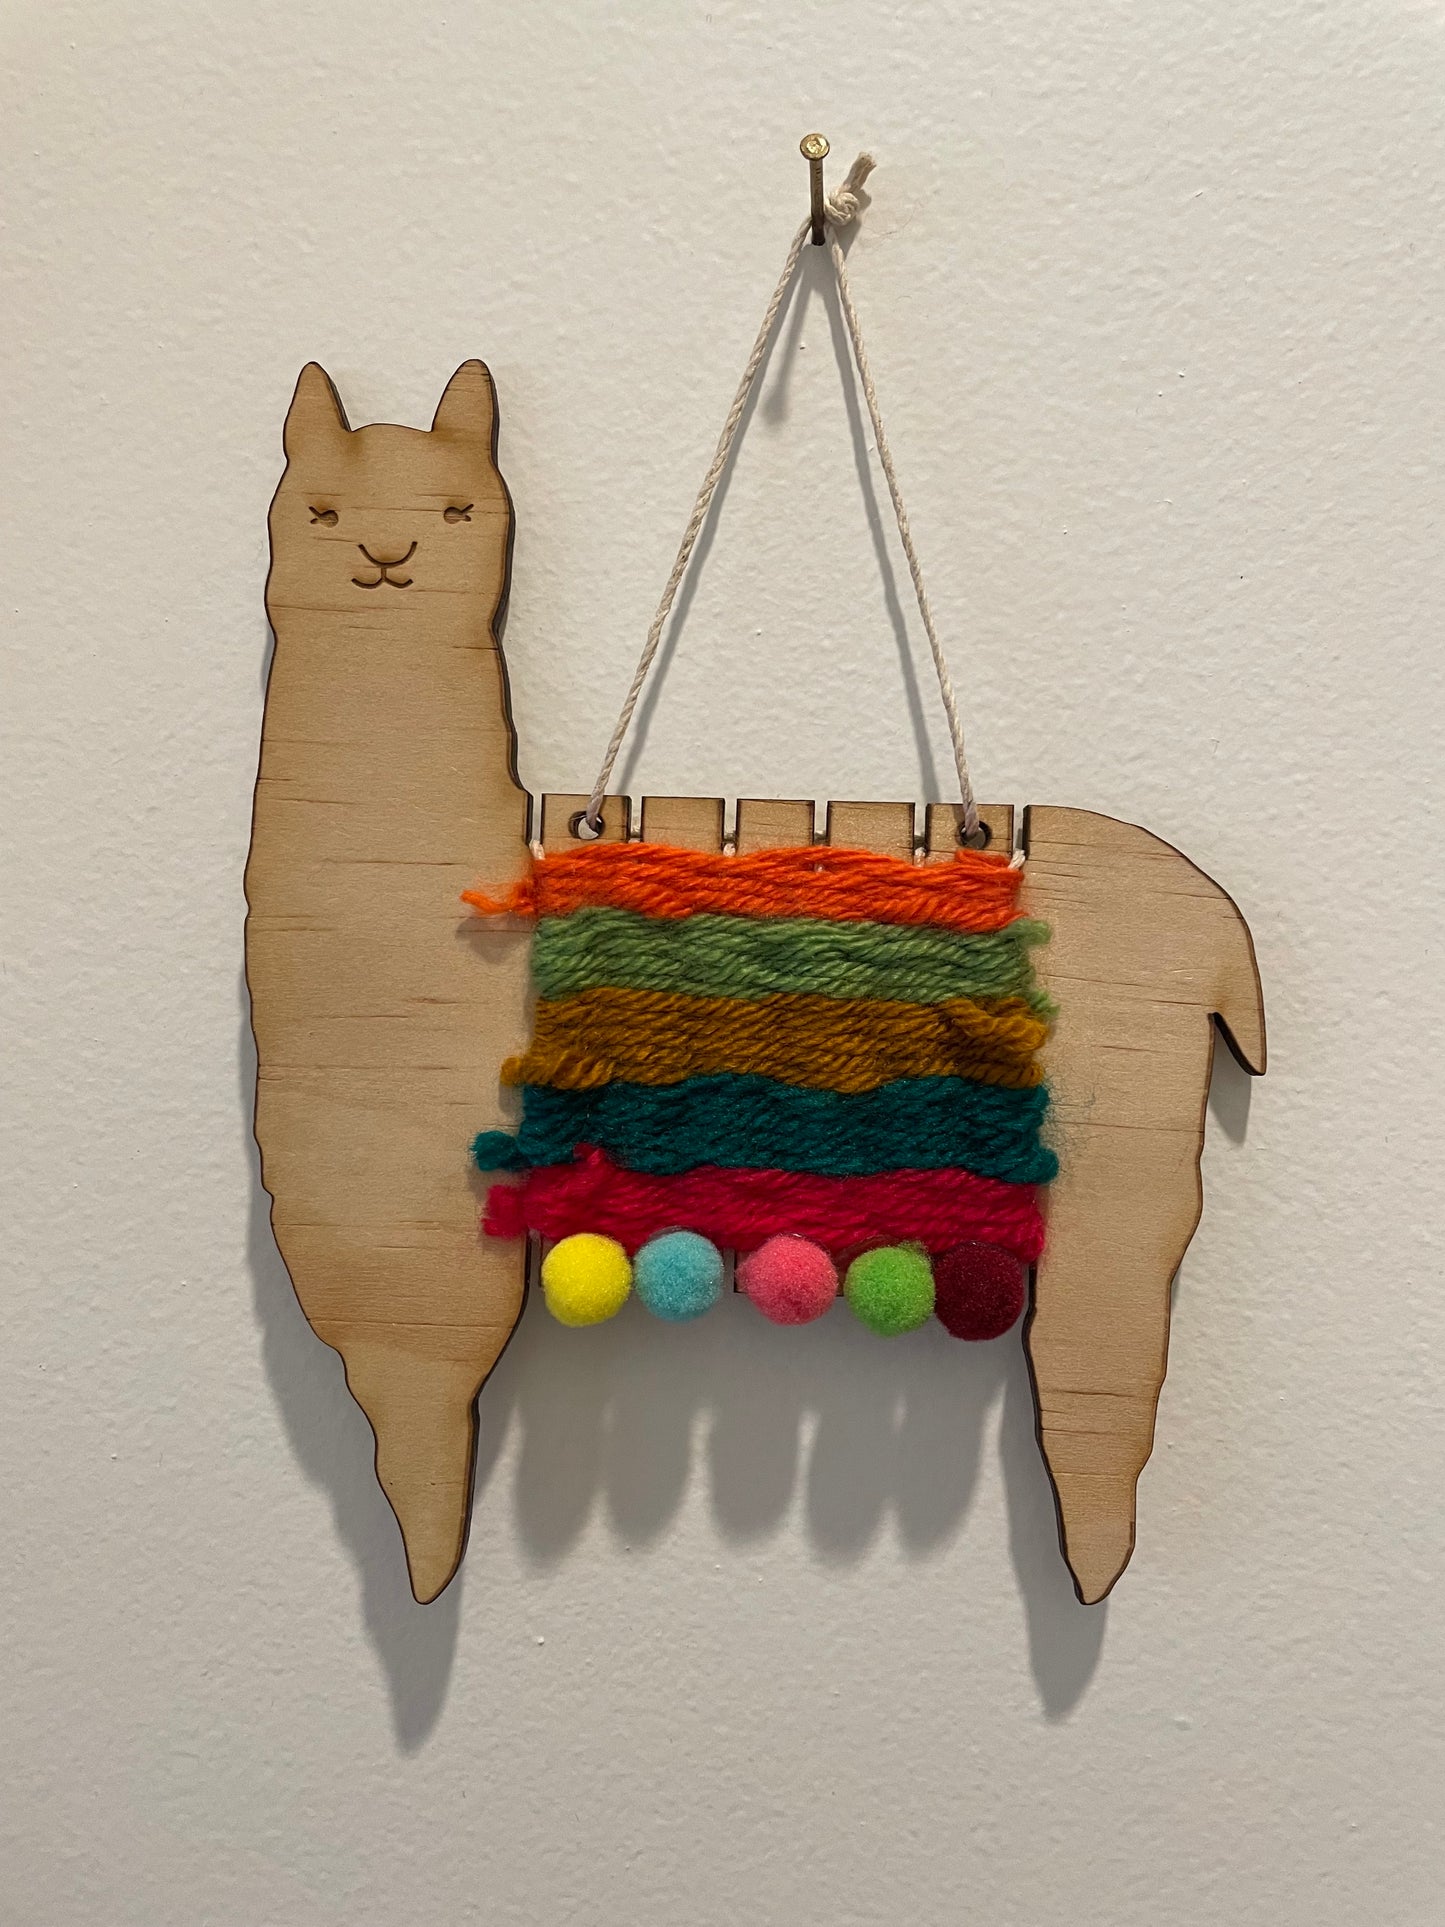 Alpaca Naomi Woven wall hanging Kit